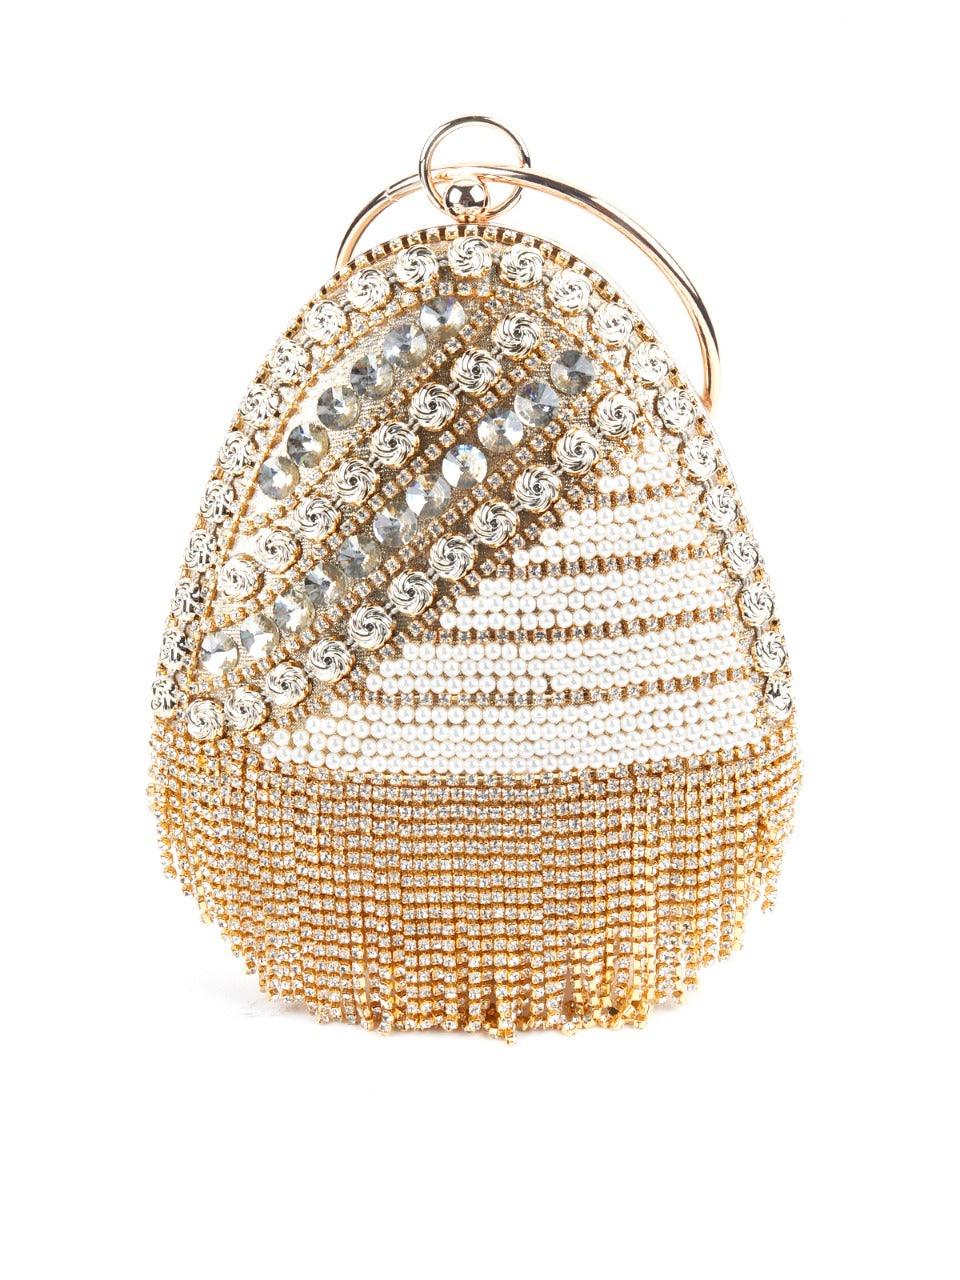 Gold Egg Shape Crystal Clutch bag - Odette